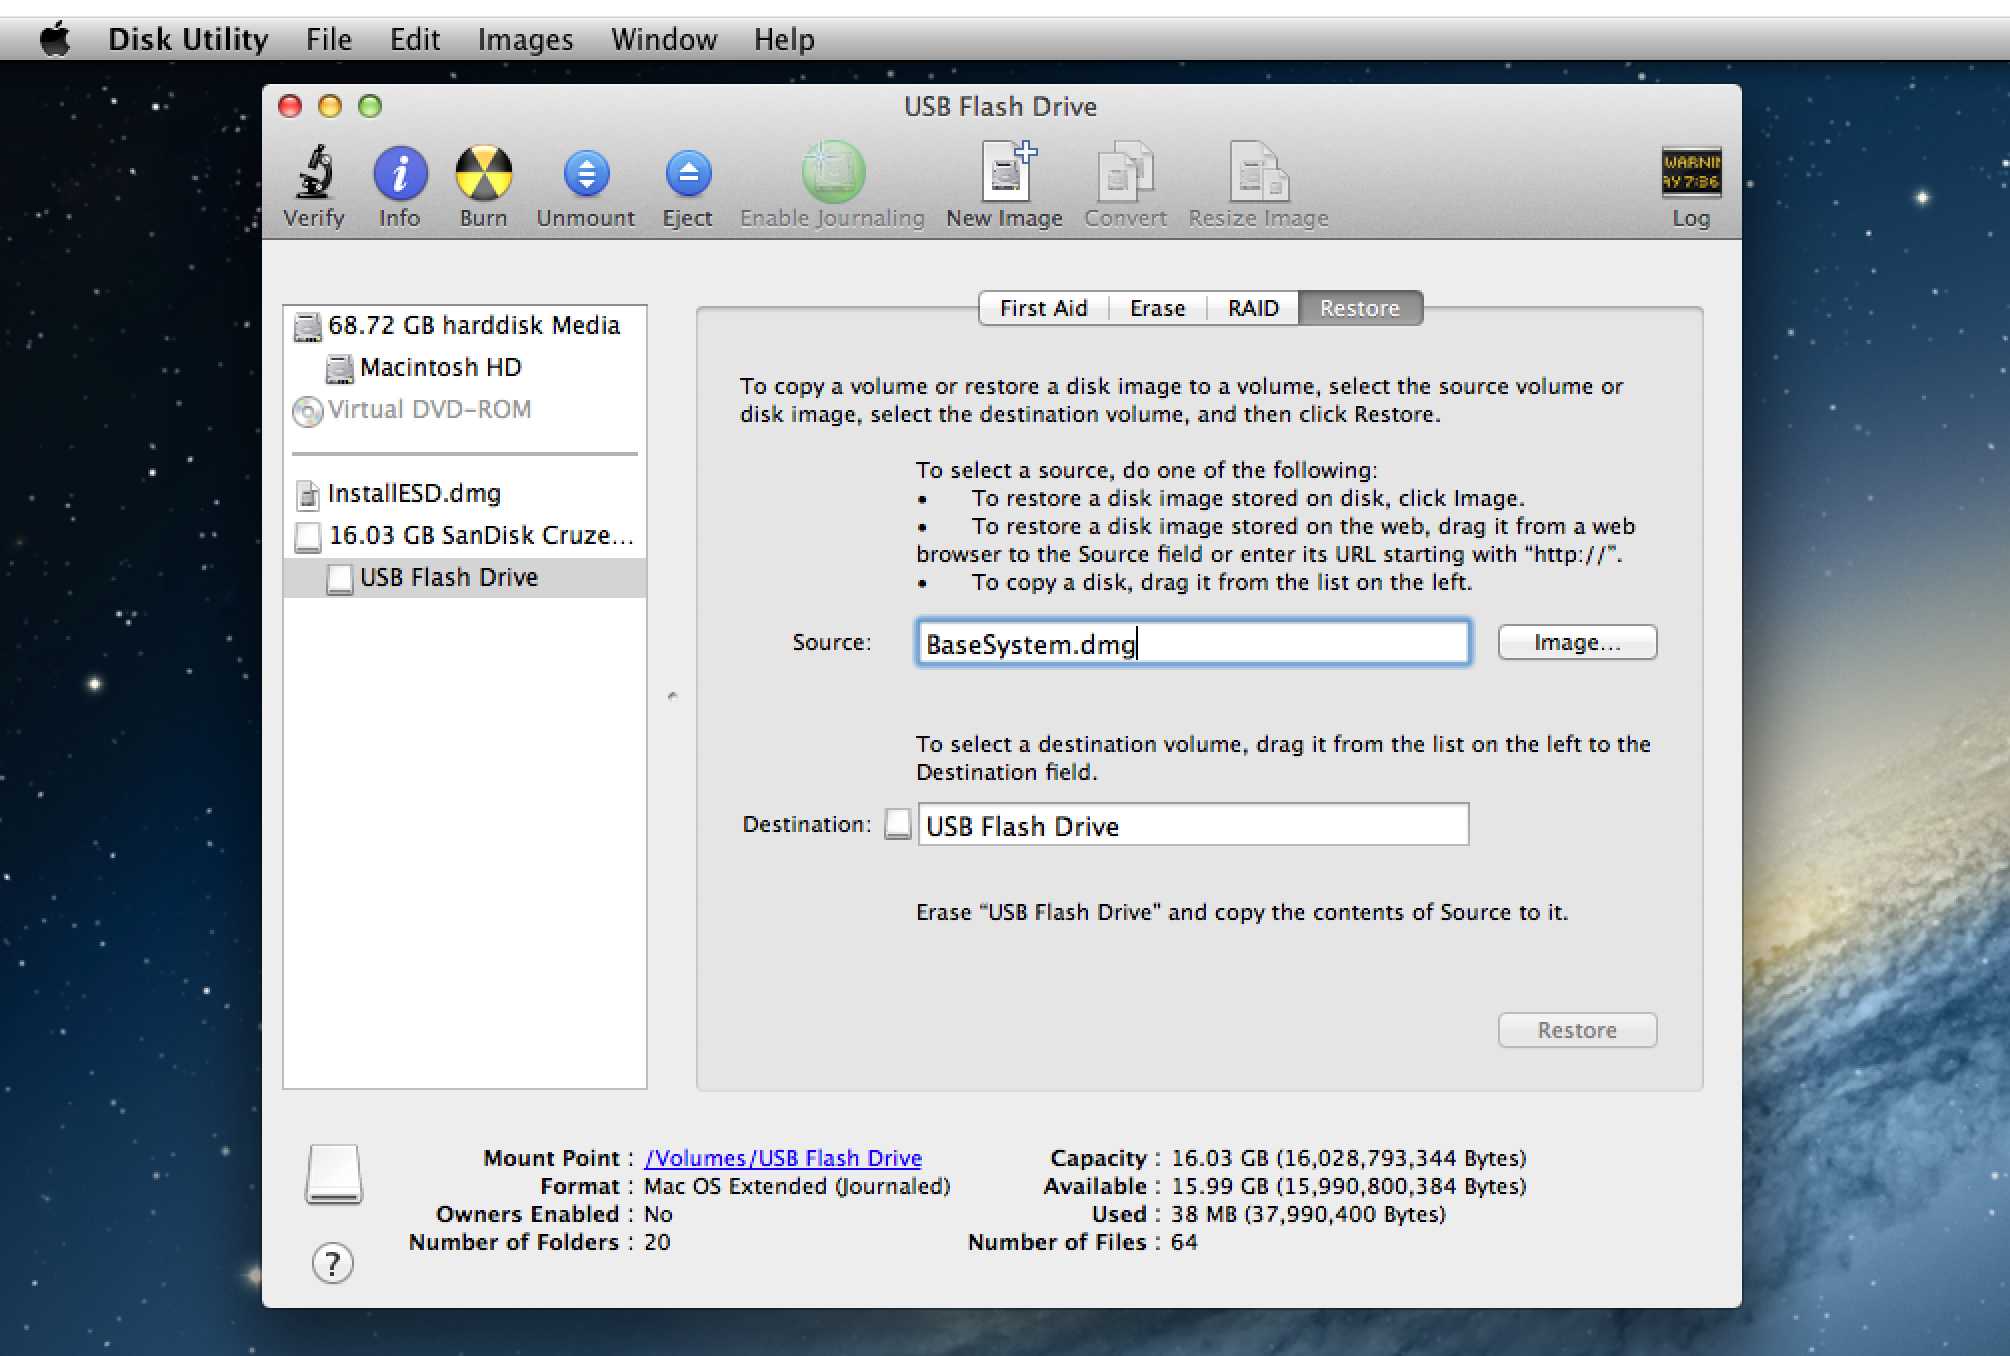 notepad++ mac download dmg